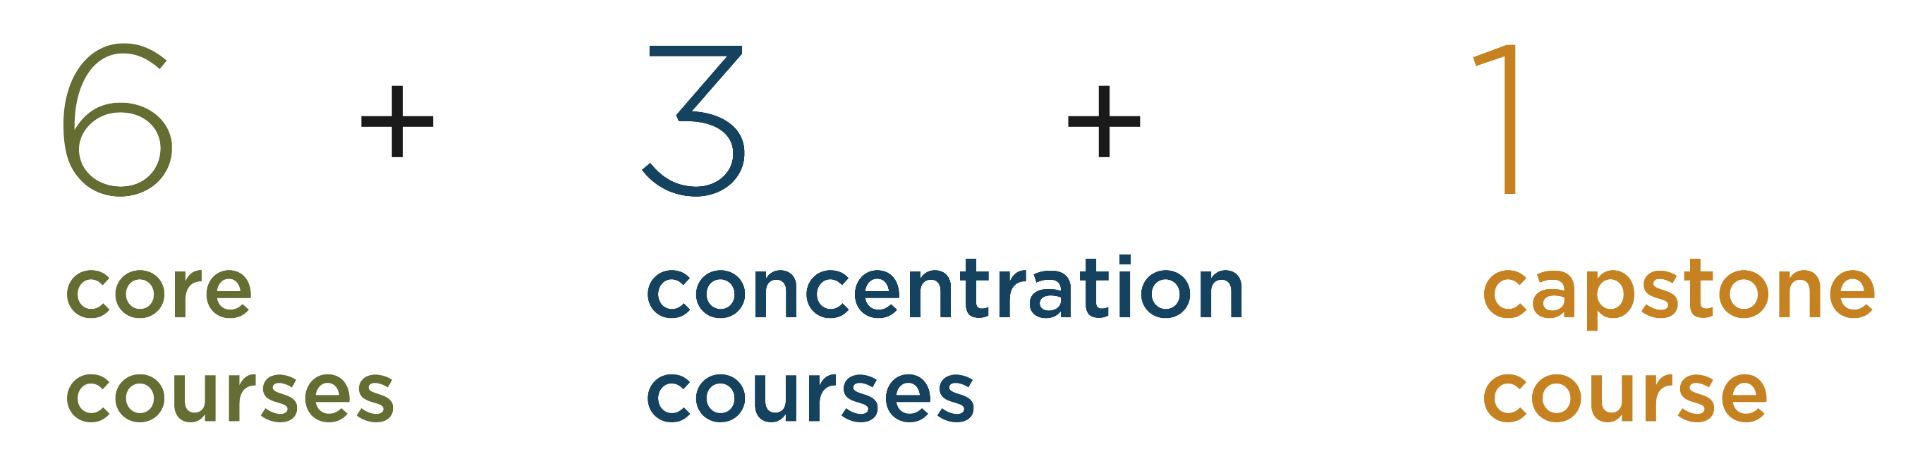 6 core courses + 3 concentration courses + 1 capstone course